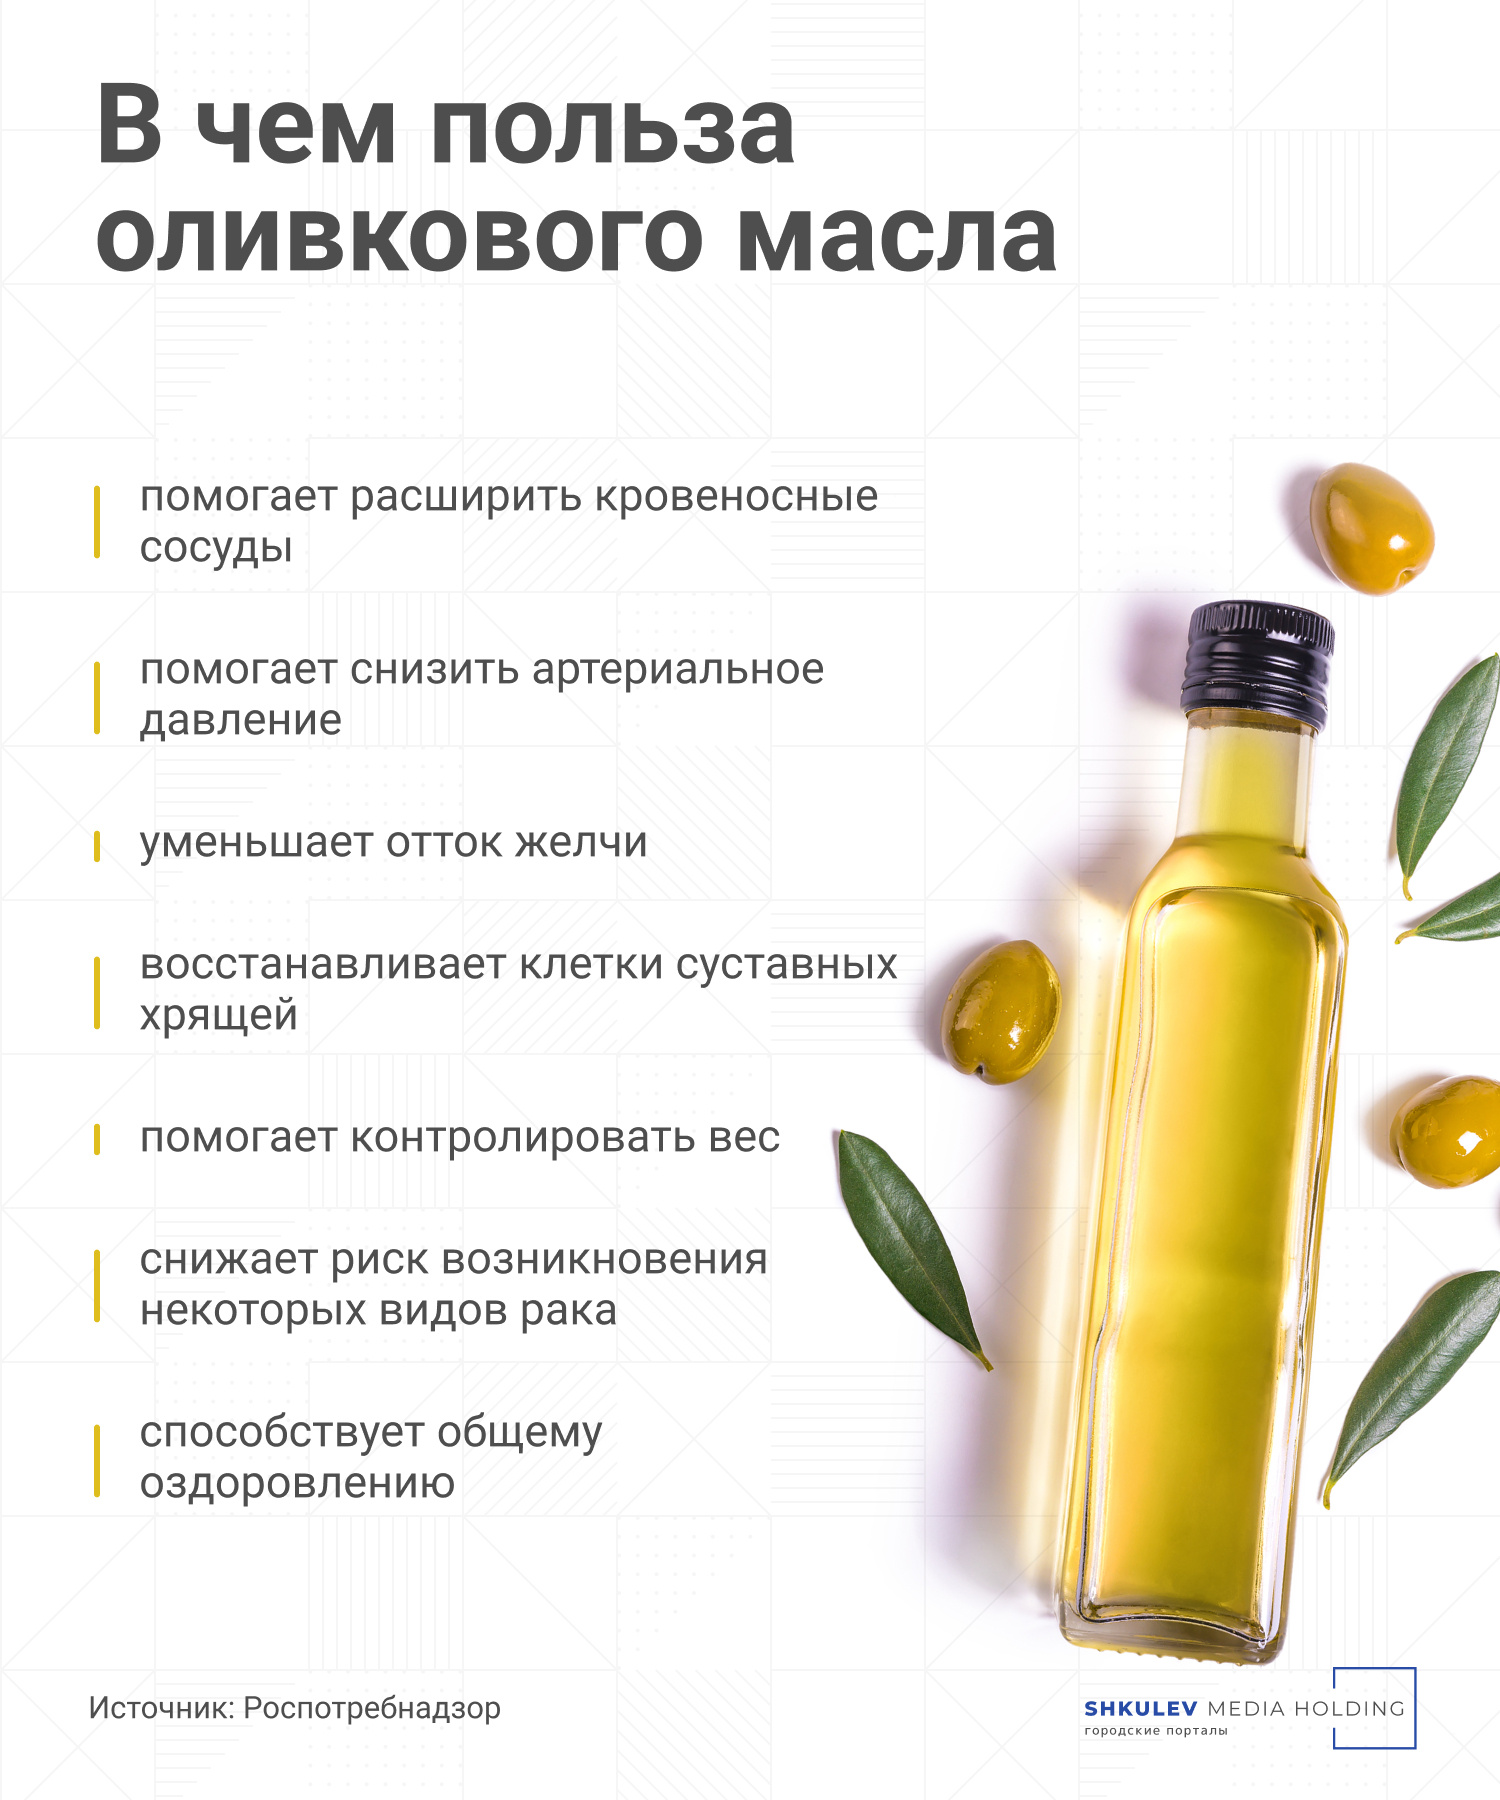 Какое масло полезнее — подсолнечное или оливковое? Отвечают врачи масло, масла, оливковое, только, подсолнечного, масле, Городские, крови, подсолнечное, говорит, холестерина, Калистратов, стоит, Торопыгина, время, продукты, уровень, которые, средиземноморской, какое